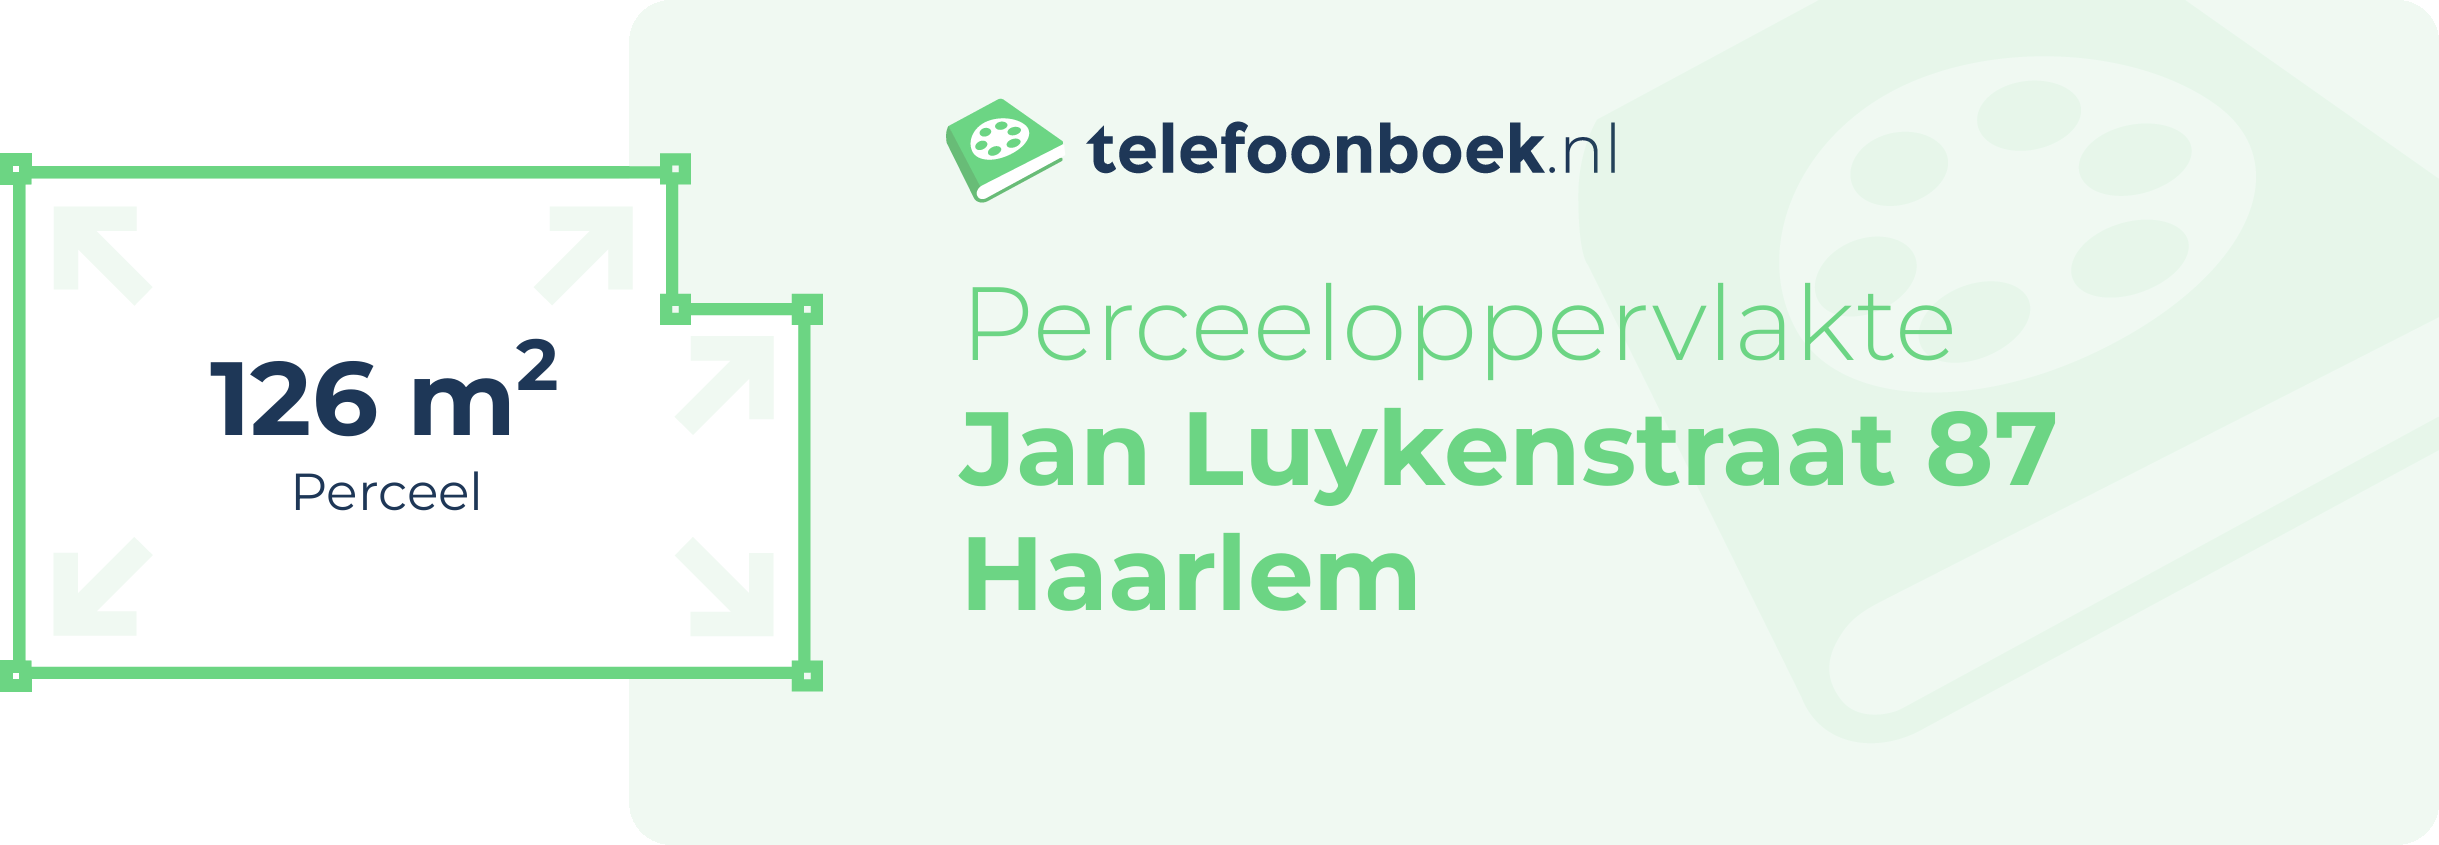 Perceeloppervlakte Jan Luykenstraat 87 Haarlem